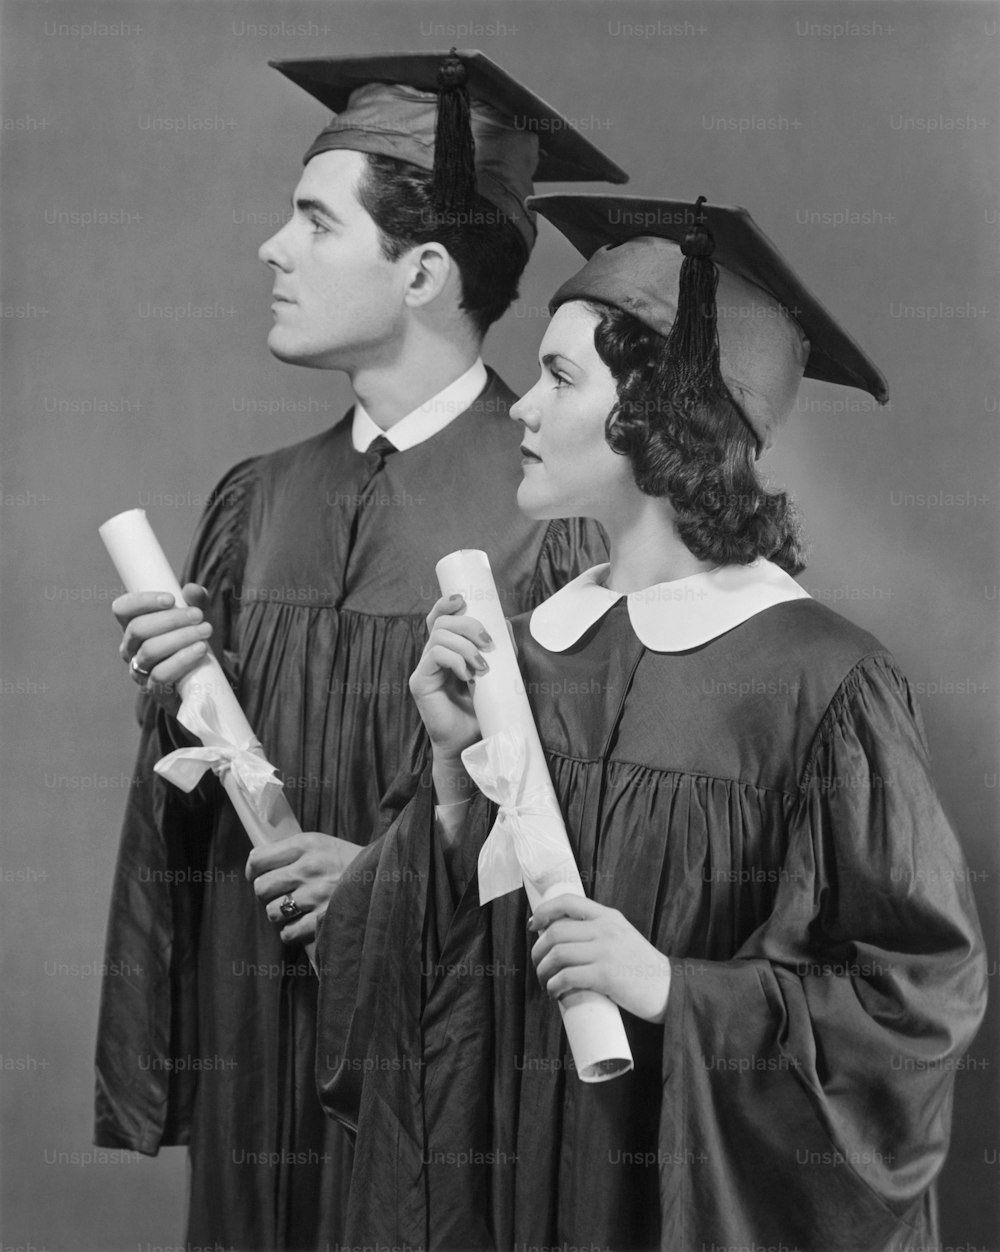 ETATS-UNIS - Vers les années 1950 : Portrait de diplômés du secondaire.